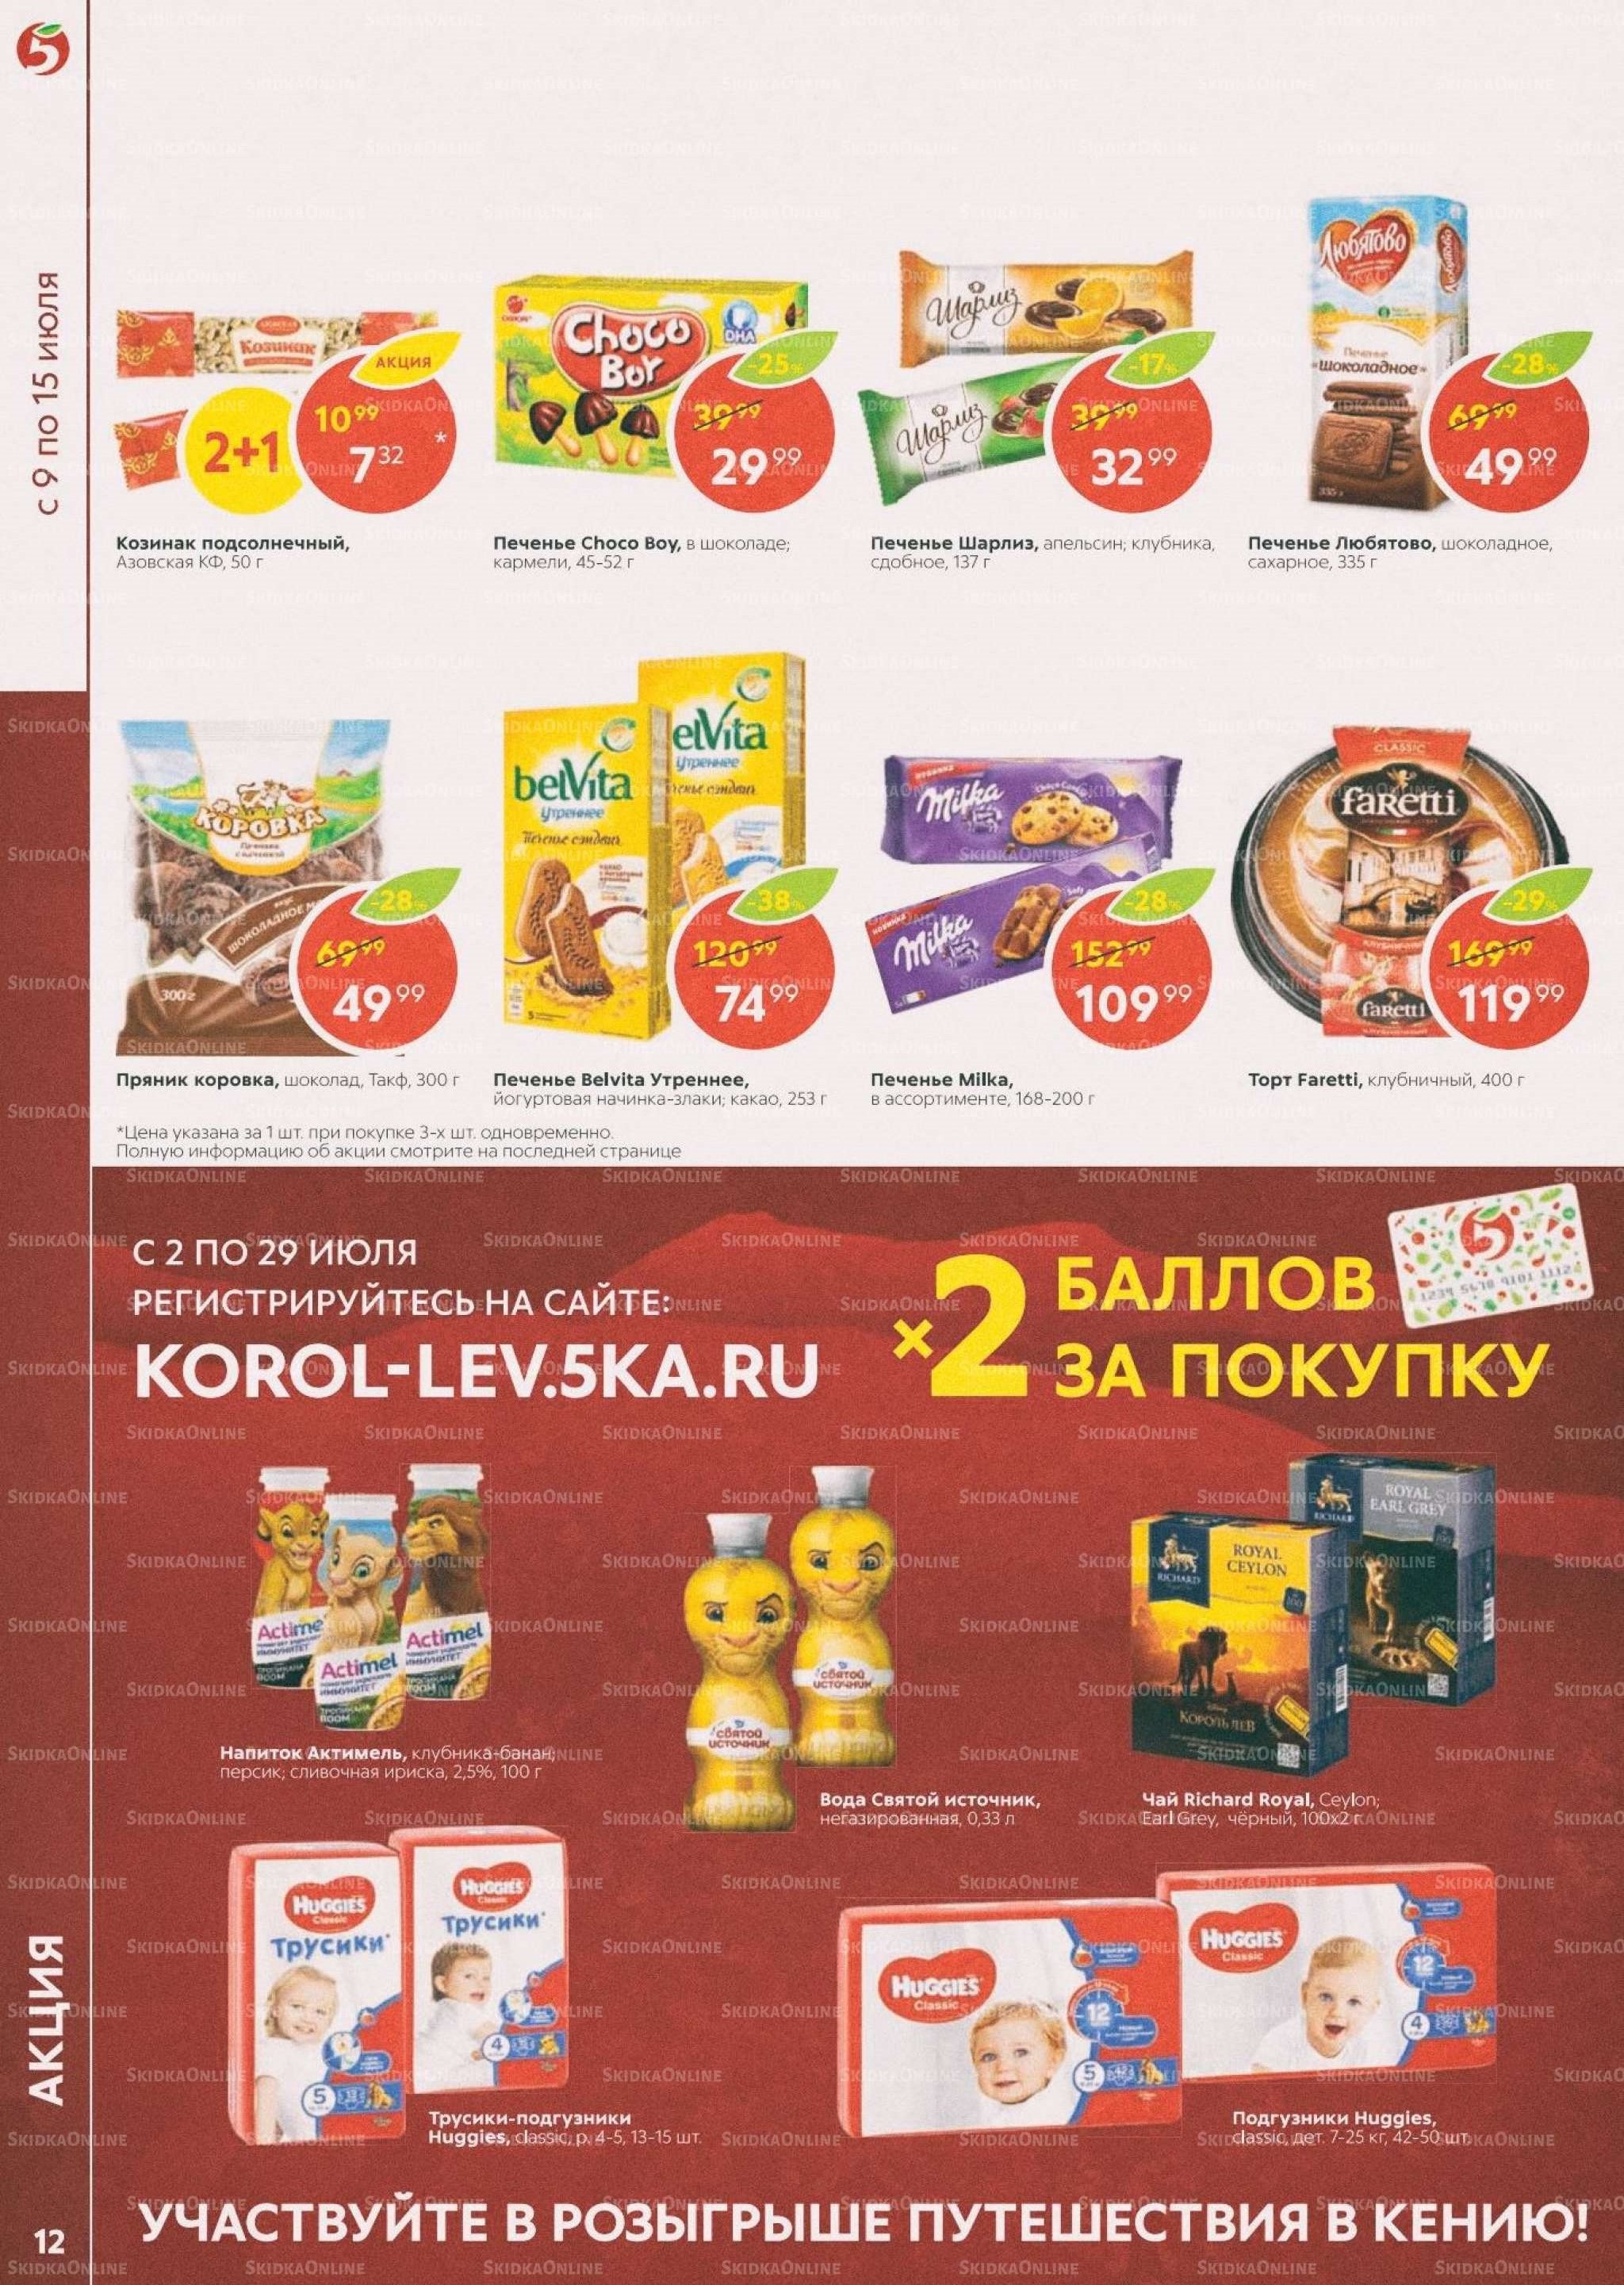 Акции в магазинах Пятерочка с 9 июля по 15 июля 2019 г.